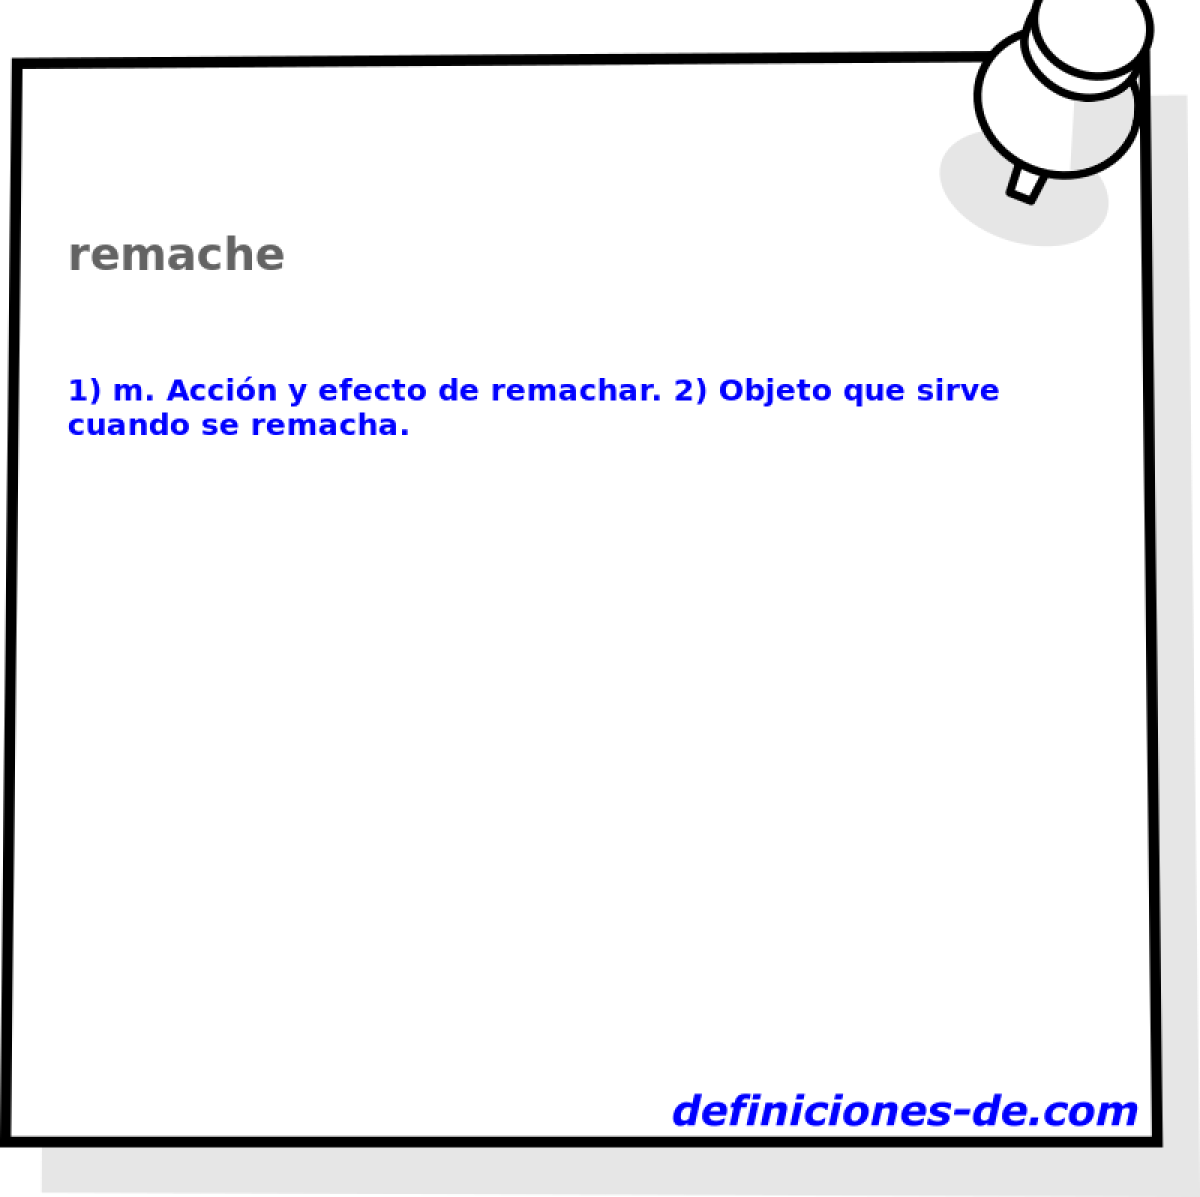 remache 